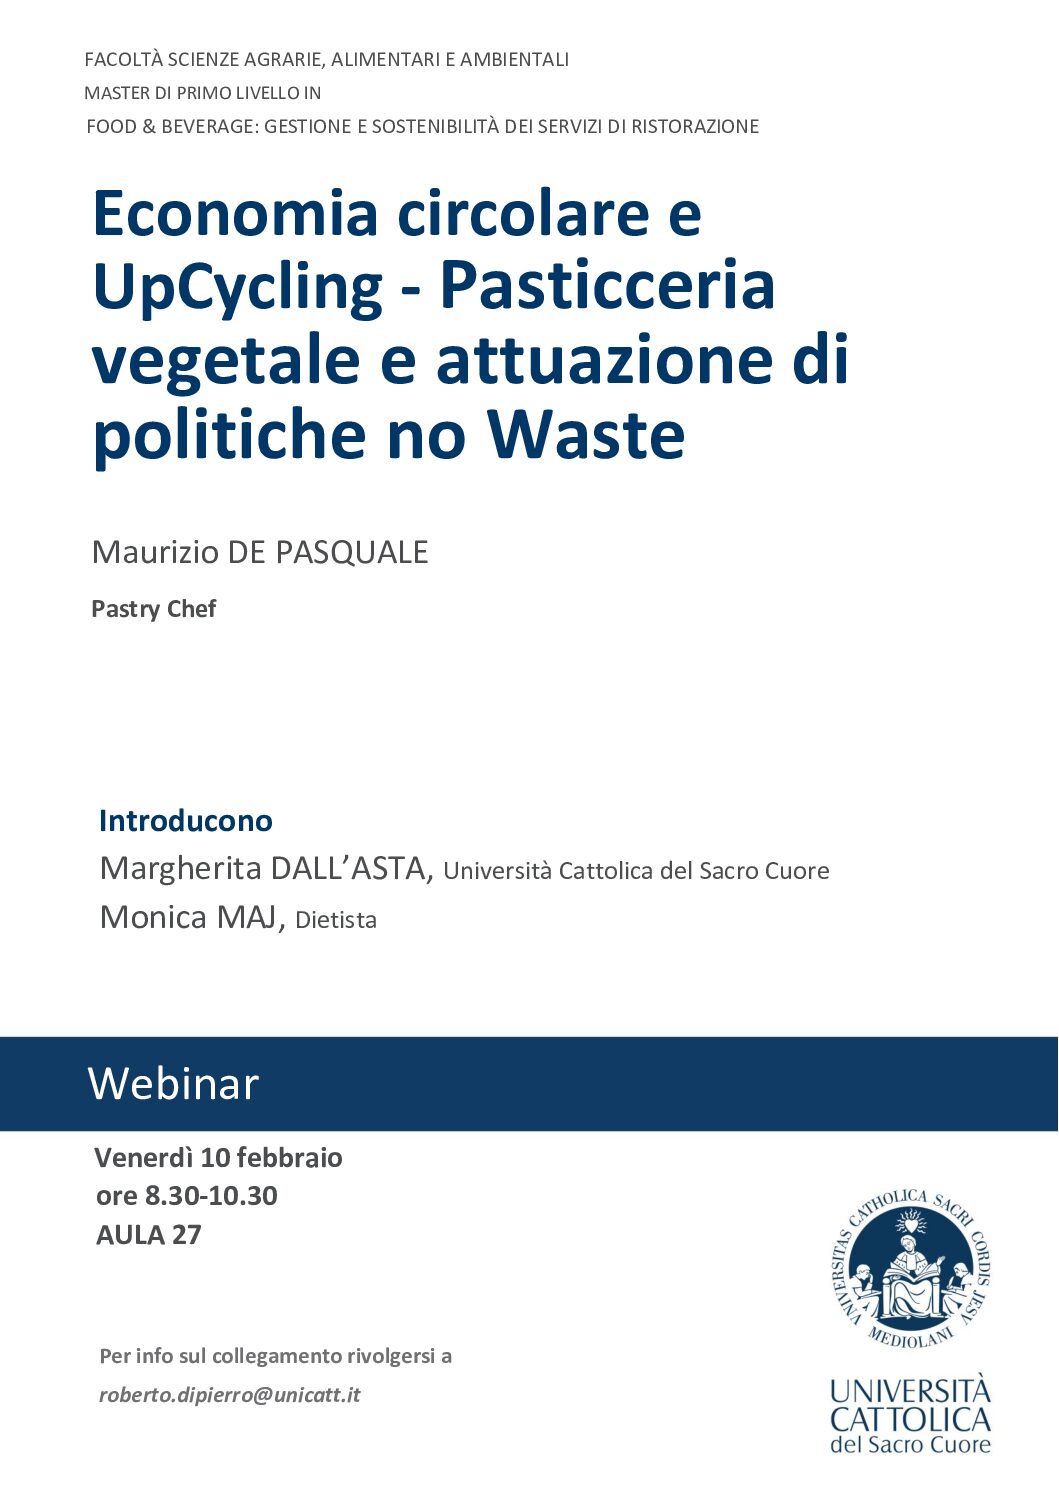 Economia circolare e UpCycling – Pasticceria vegetale e attuazione di politiche no Waste